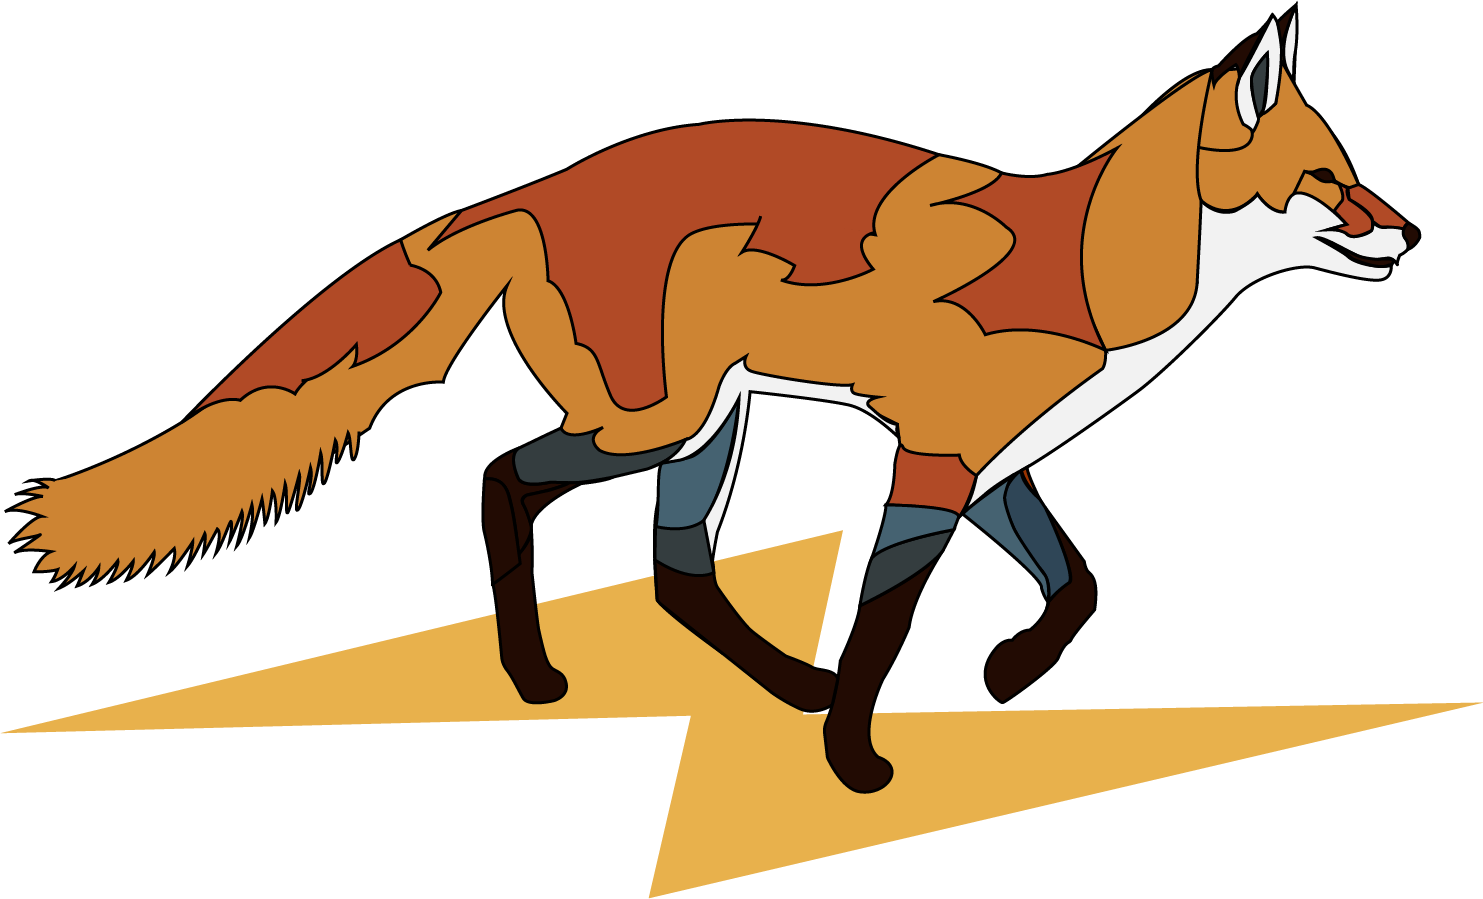 Thunderbolt Fox logo